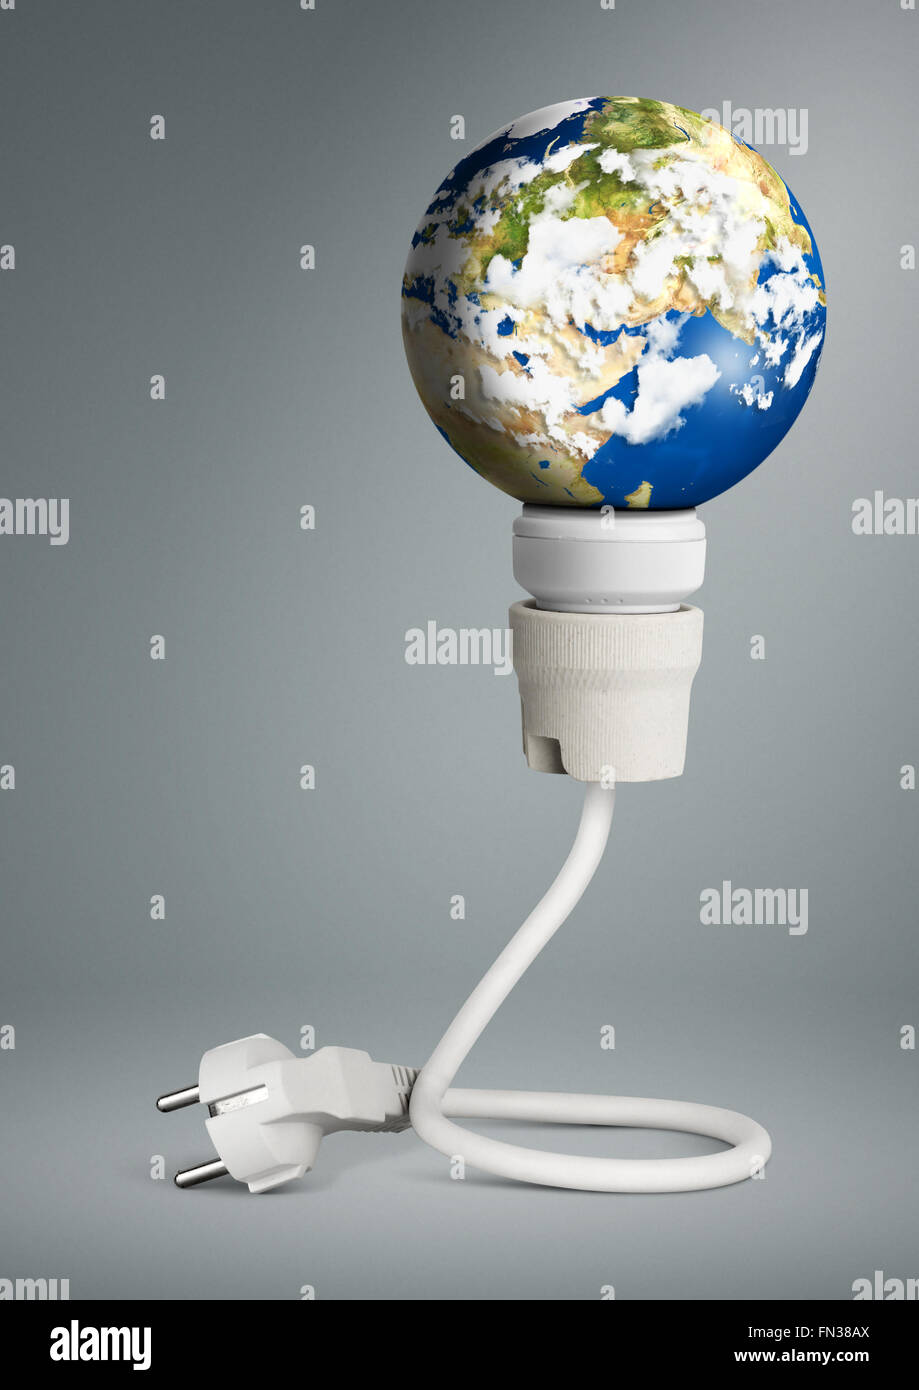 Concepto de energía limpia, la bombilla con el planeta Tierra y enchufe Foto de stock